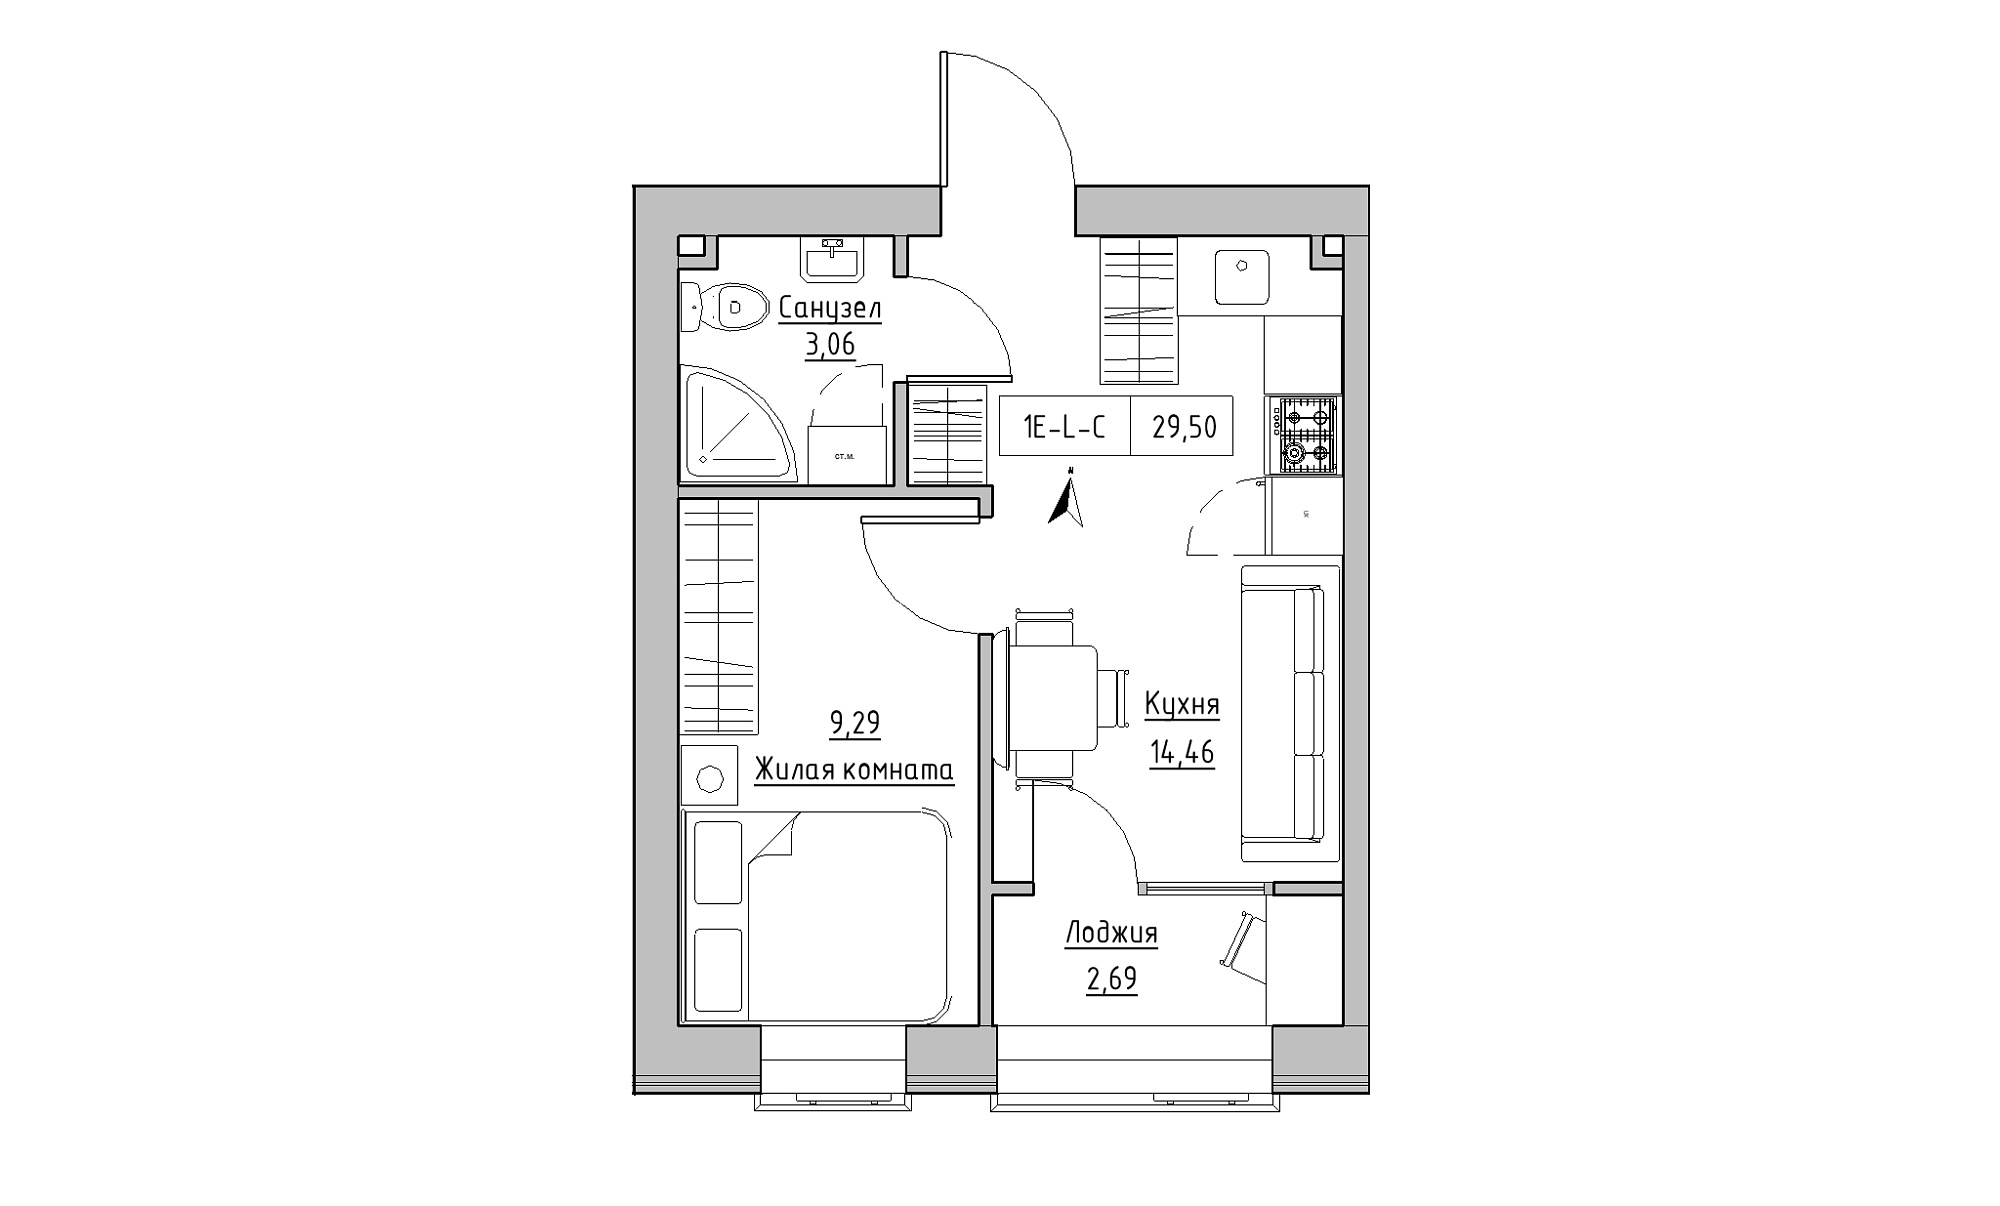 Планування 1-к квартира площею 29.5м2, KS-023-01/0011.